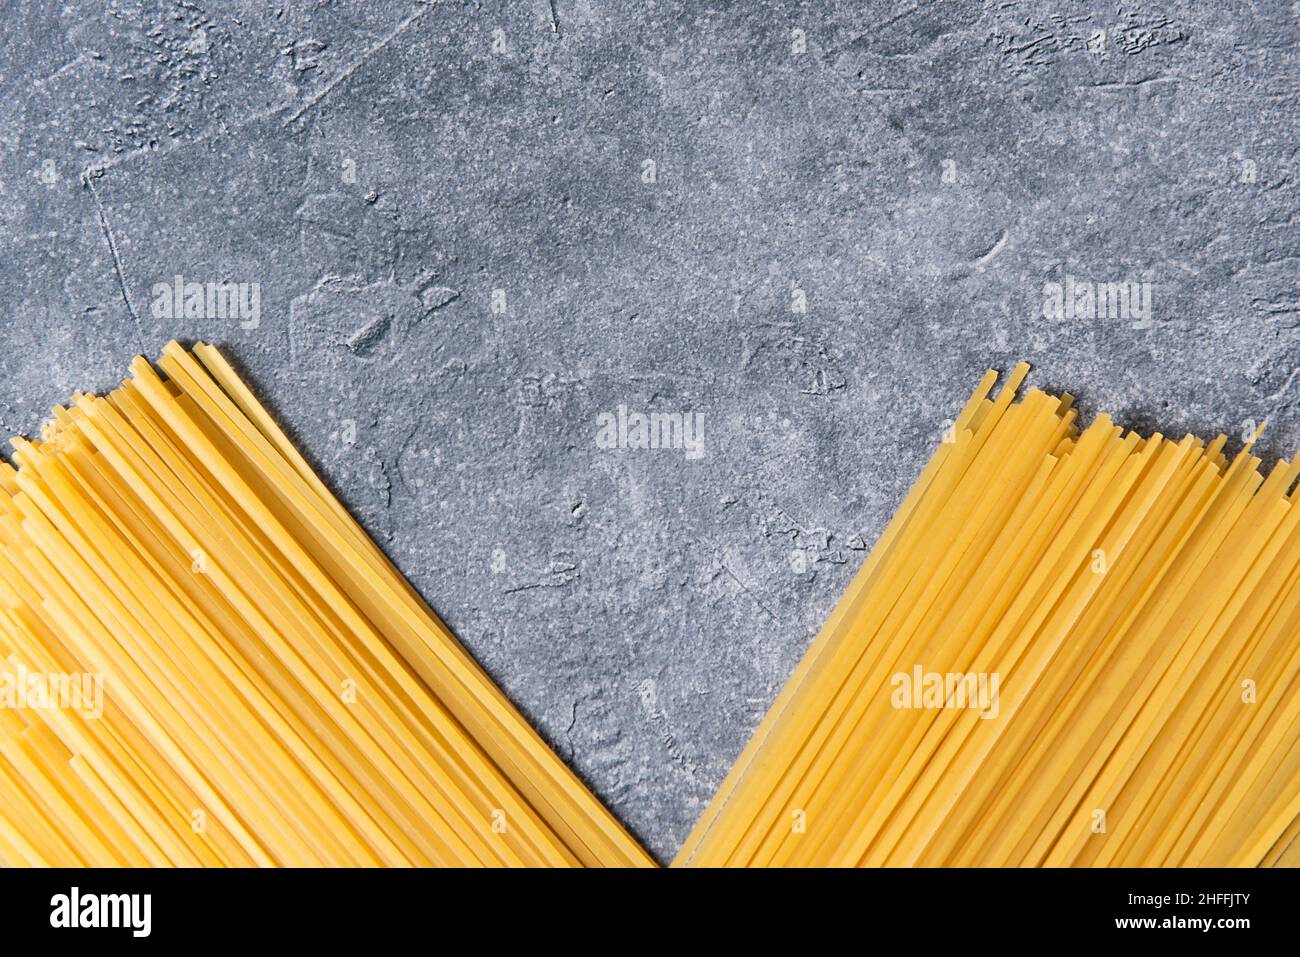 Spaghetti pasta on stone background. Stock Photo